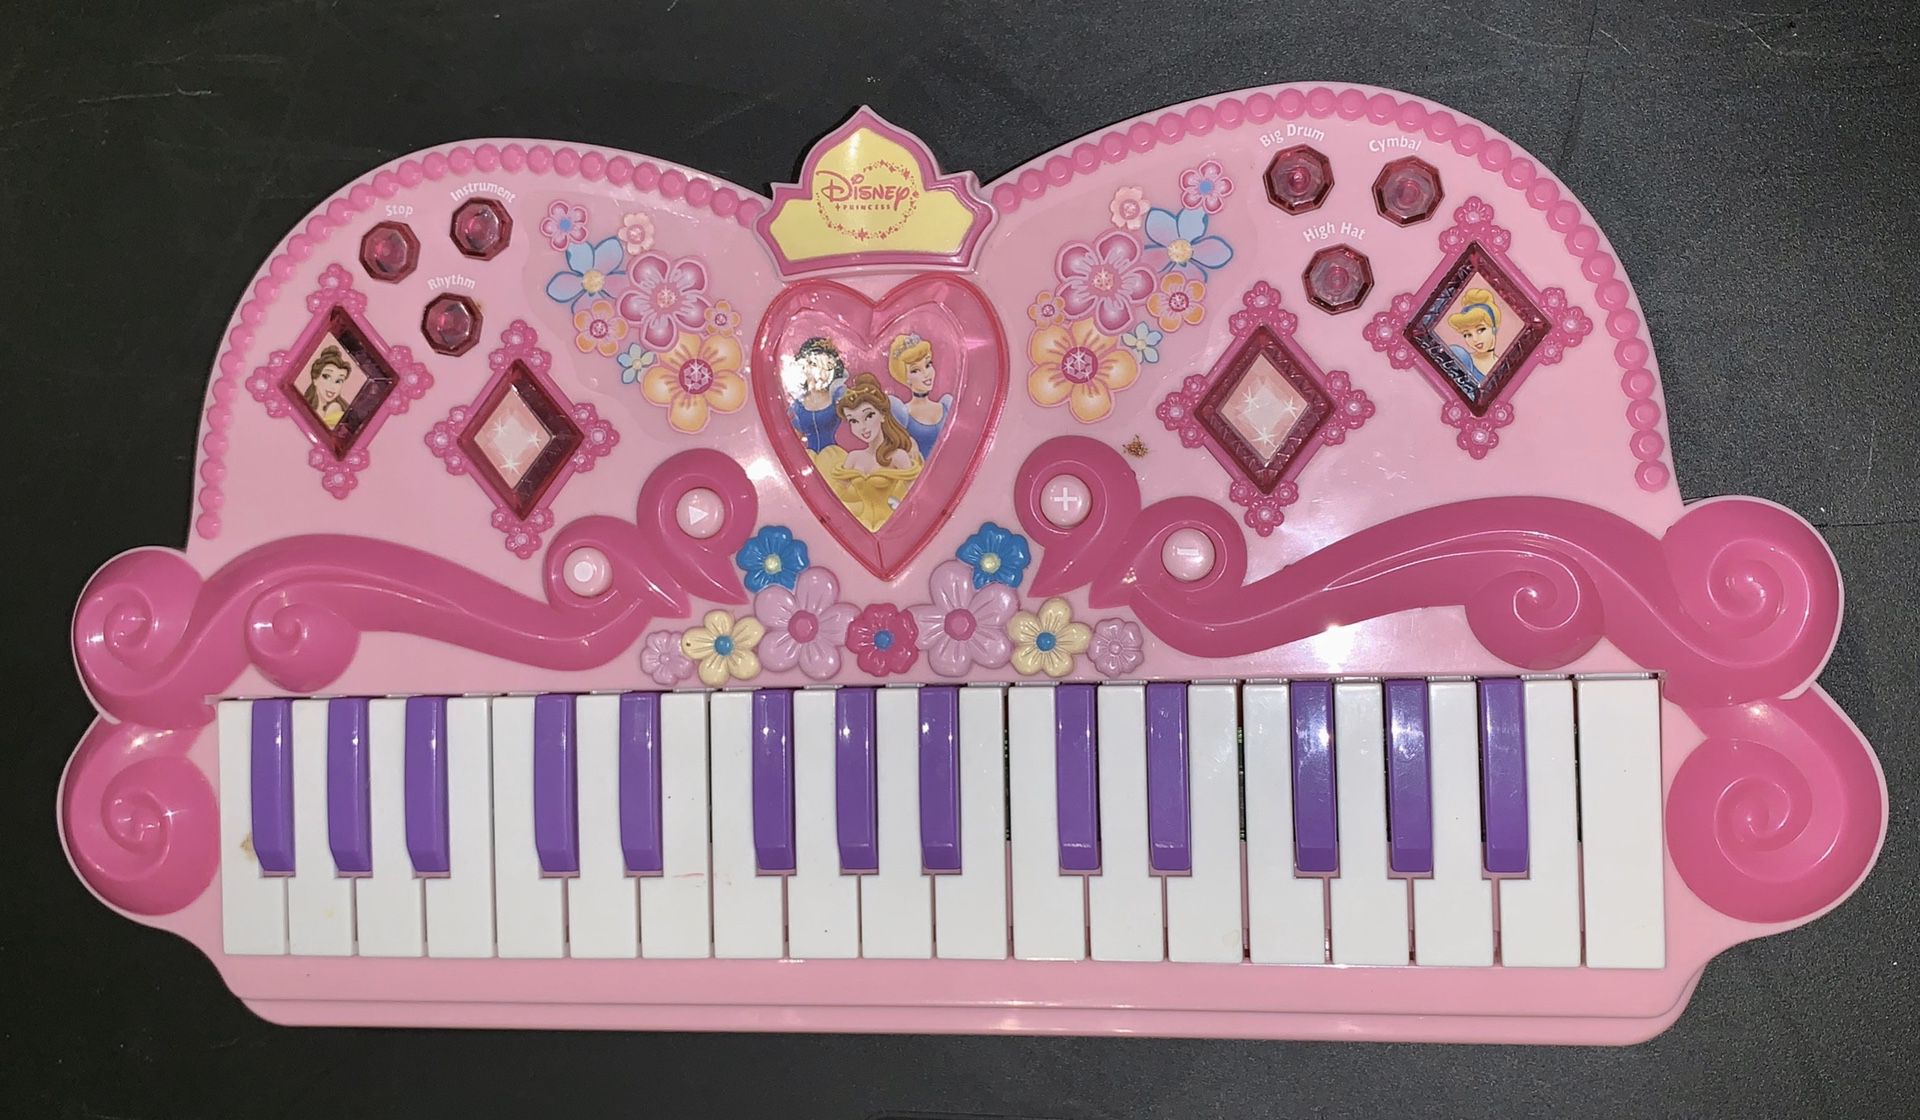 Disney Princess Keyboard/Piano